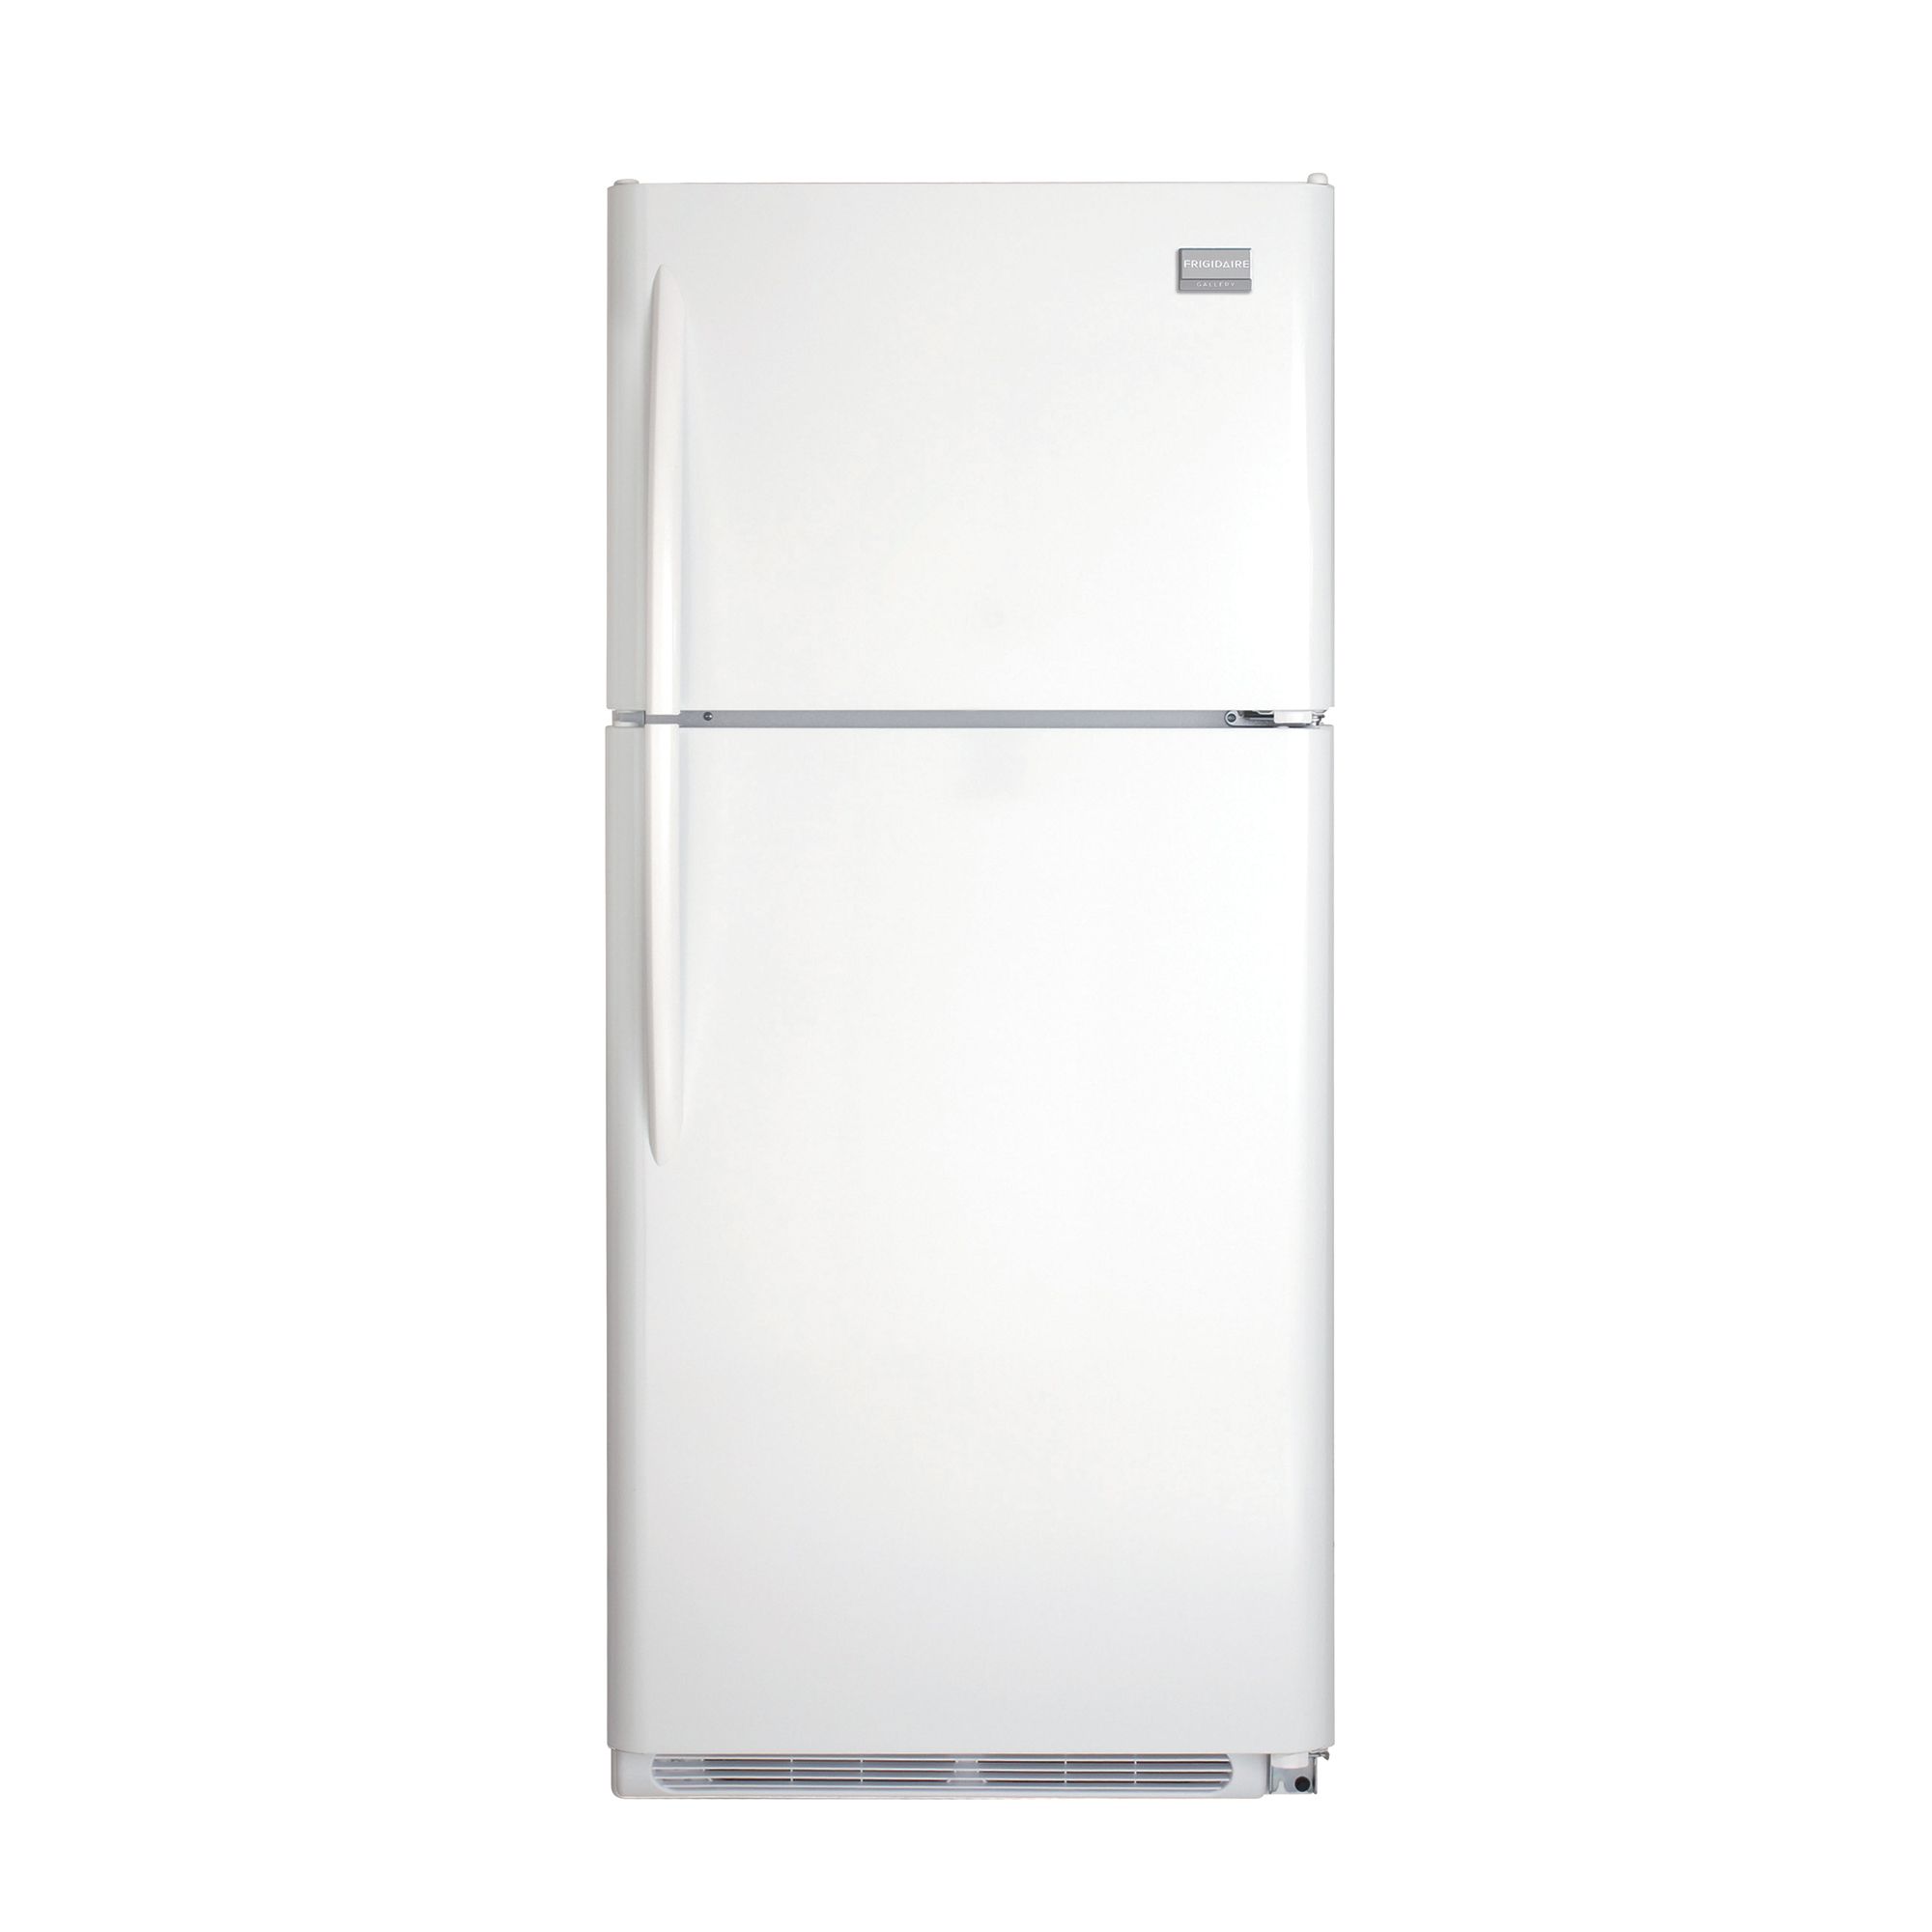 Frigidaire 18.2 cu. ft. Top-Freezer Refrigerator